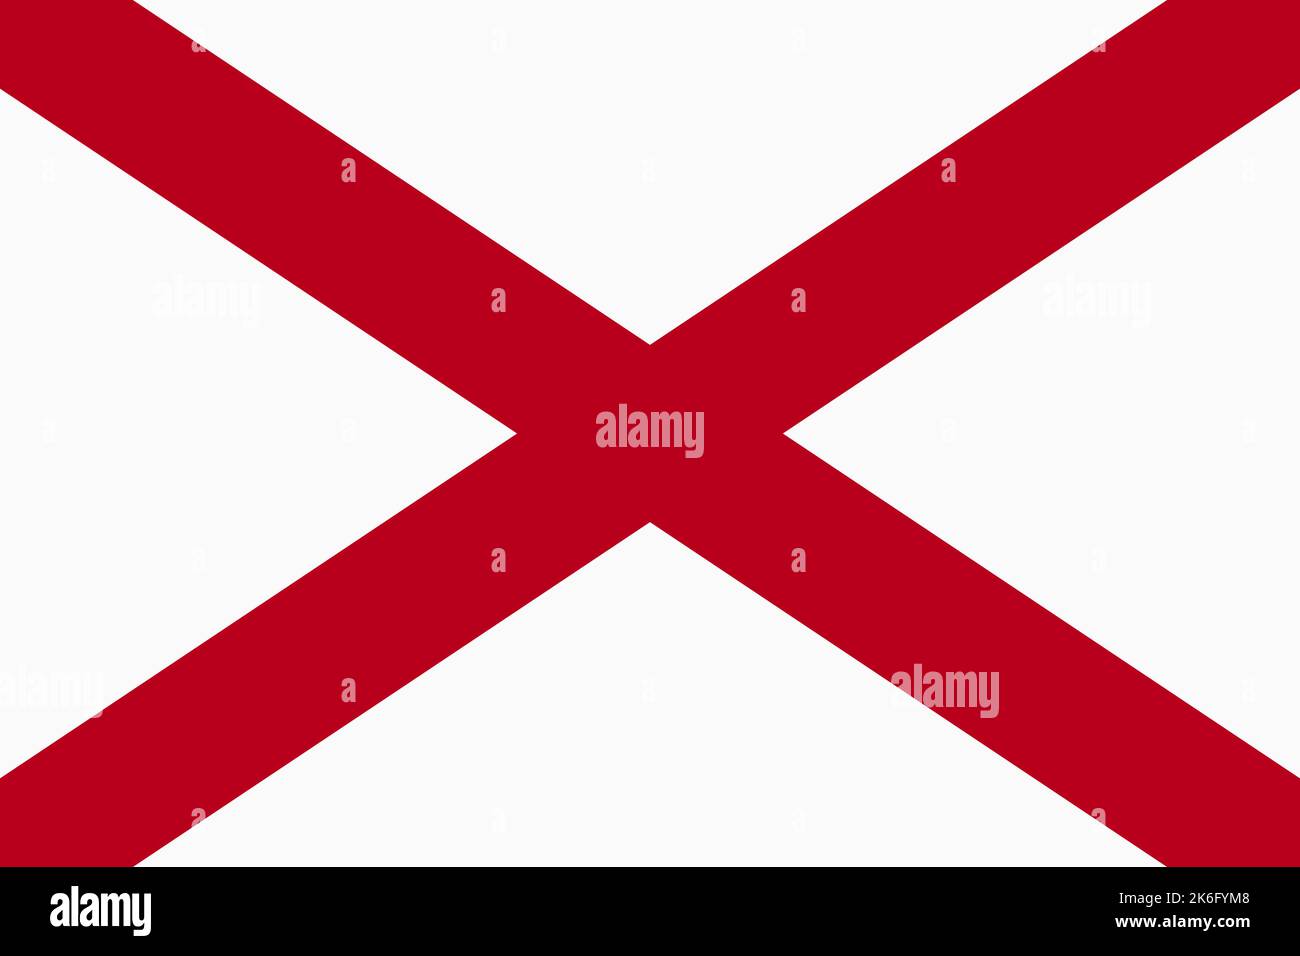 Drapeau de l'Alabama. Bannière et symbole patriotique. Couleurs officielles. Illustration vectorielle plate. Illustration de Vecteur